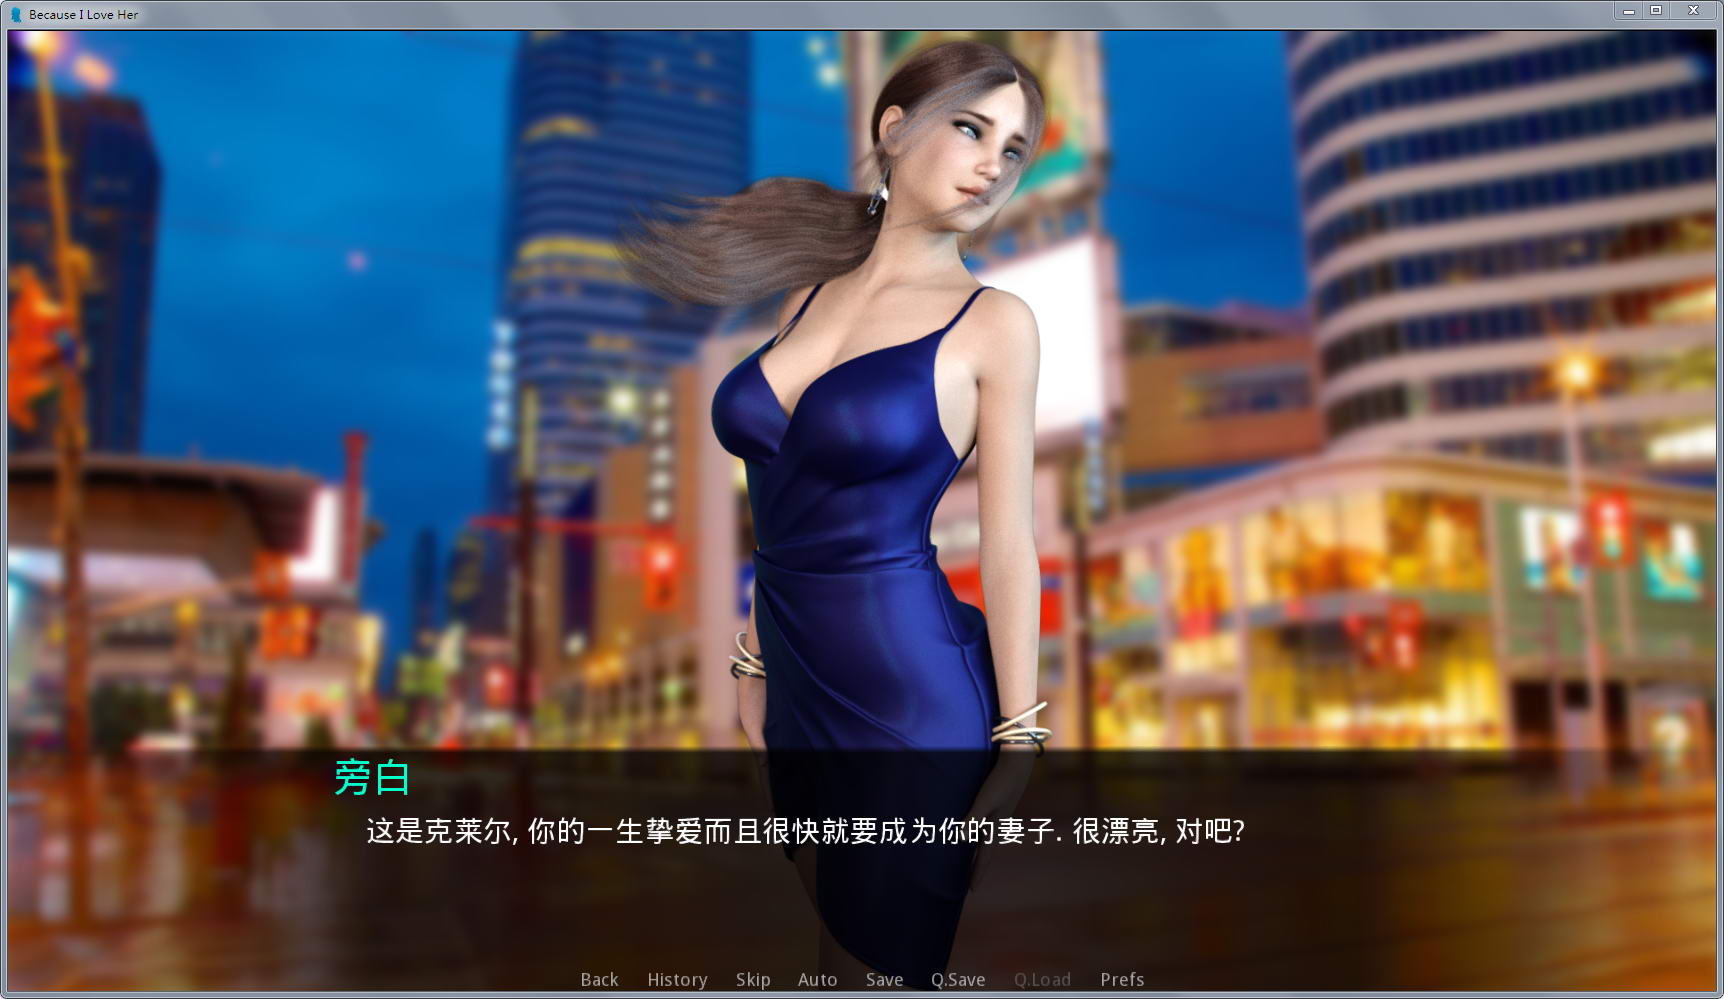 因为我爱她(Because I Love Her) ver1.1 汉化版 PC+安卓 SLG游戏&神作-1